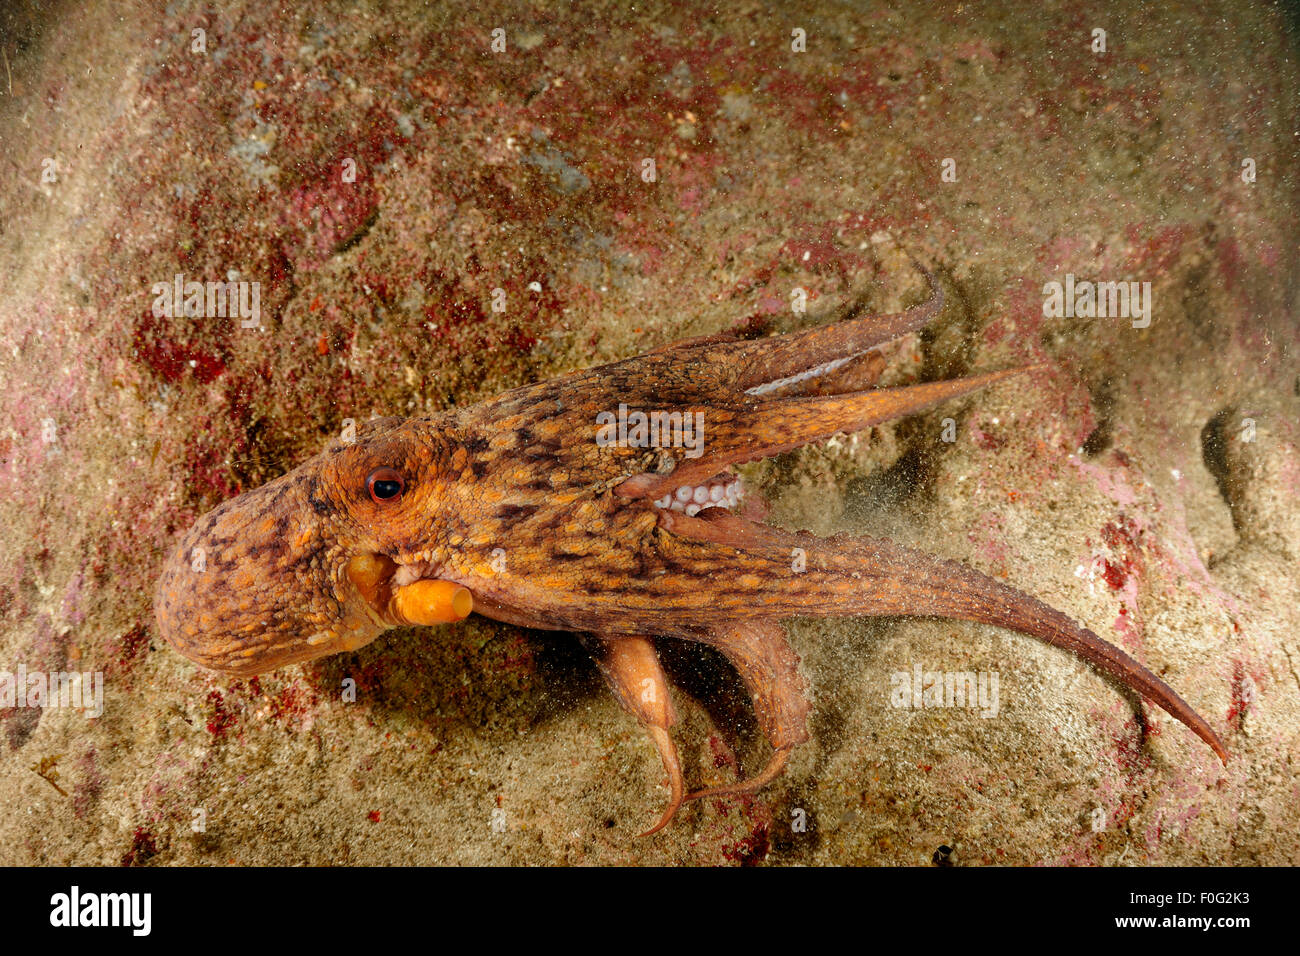 Poulpe commun (Octopus vulgaris) natation passé rock, de Malte, de la méditérannée, Mai 2009 Banque D'Images